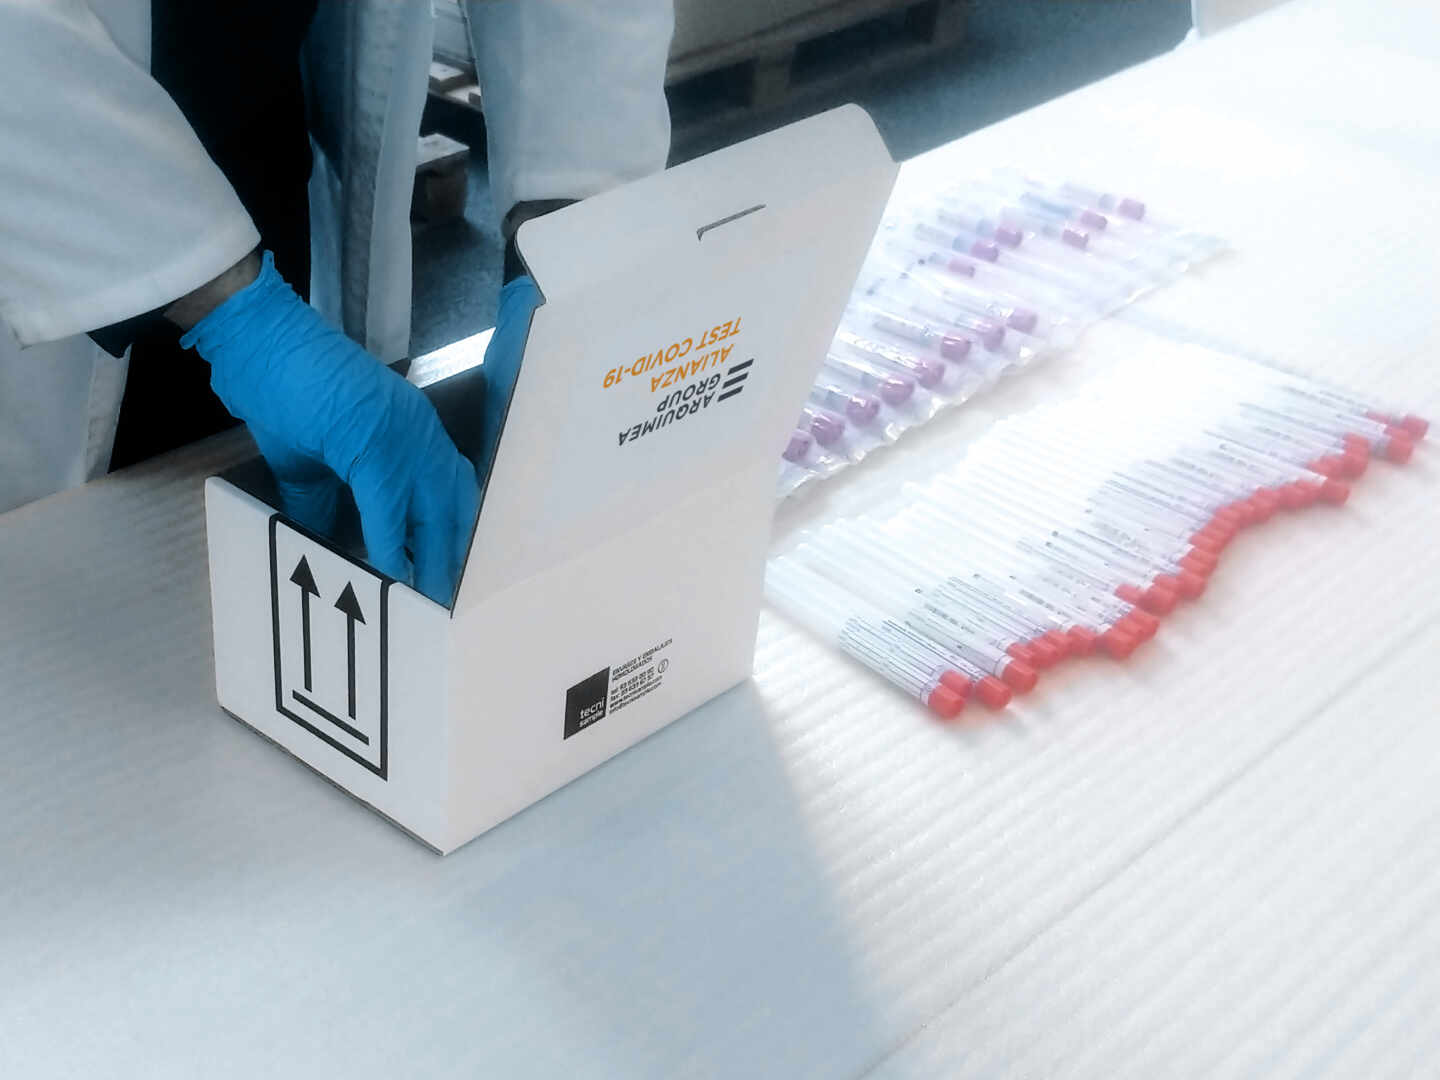 Un técnico coge unos kits de muestra en el laboratorio de Arquimea Group, la firma que lidera el consorcio.